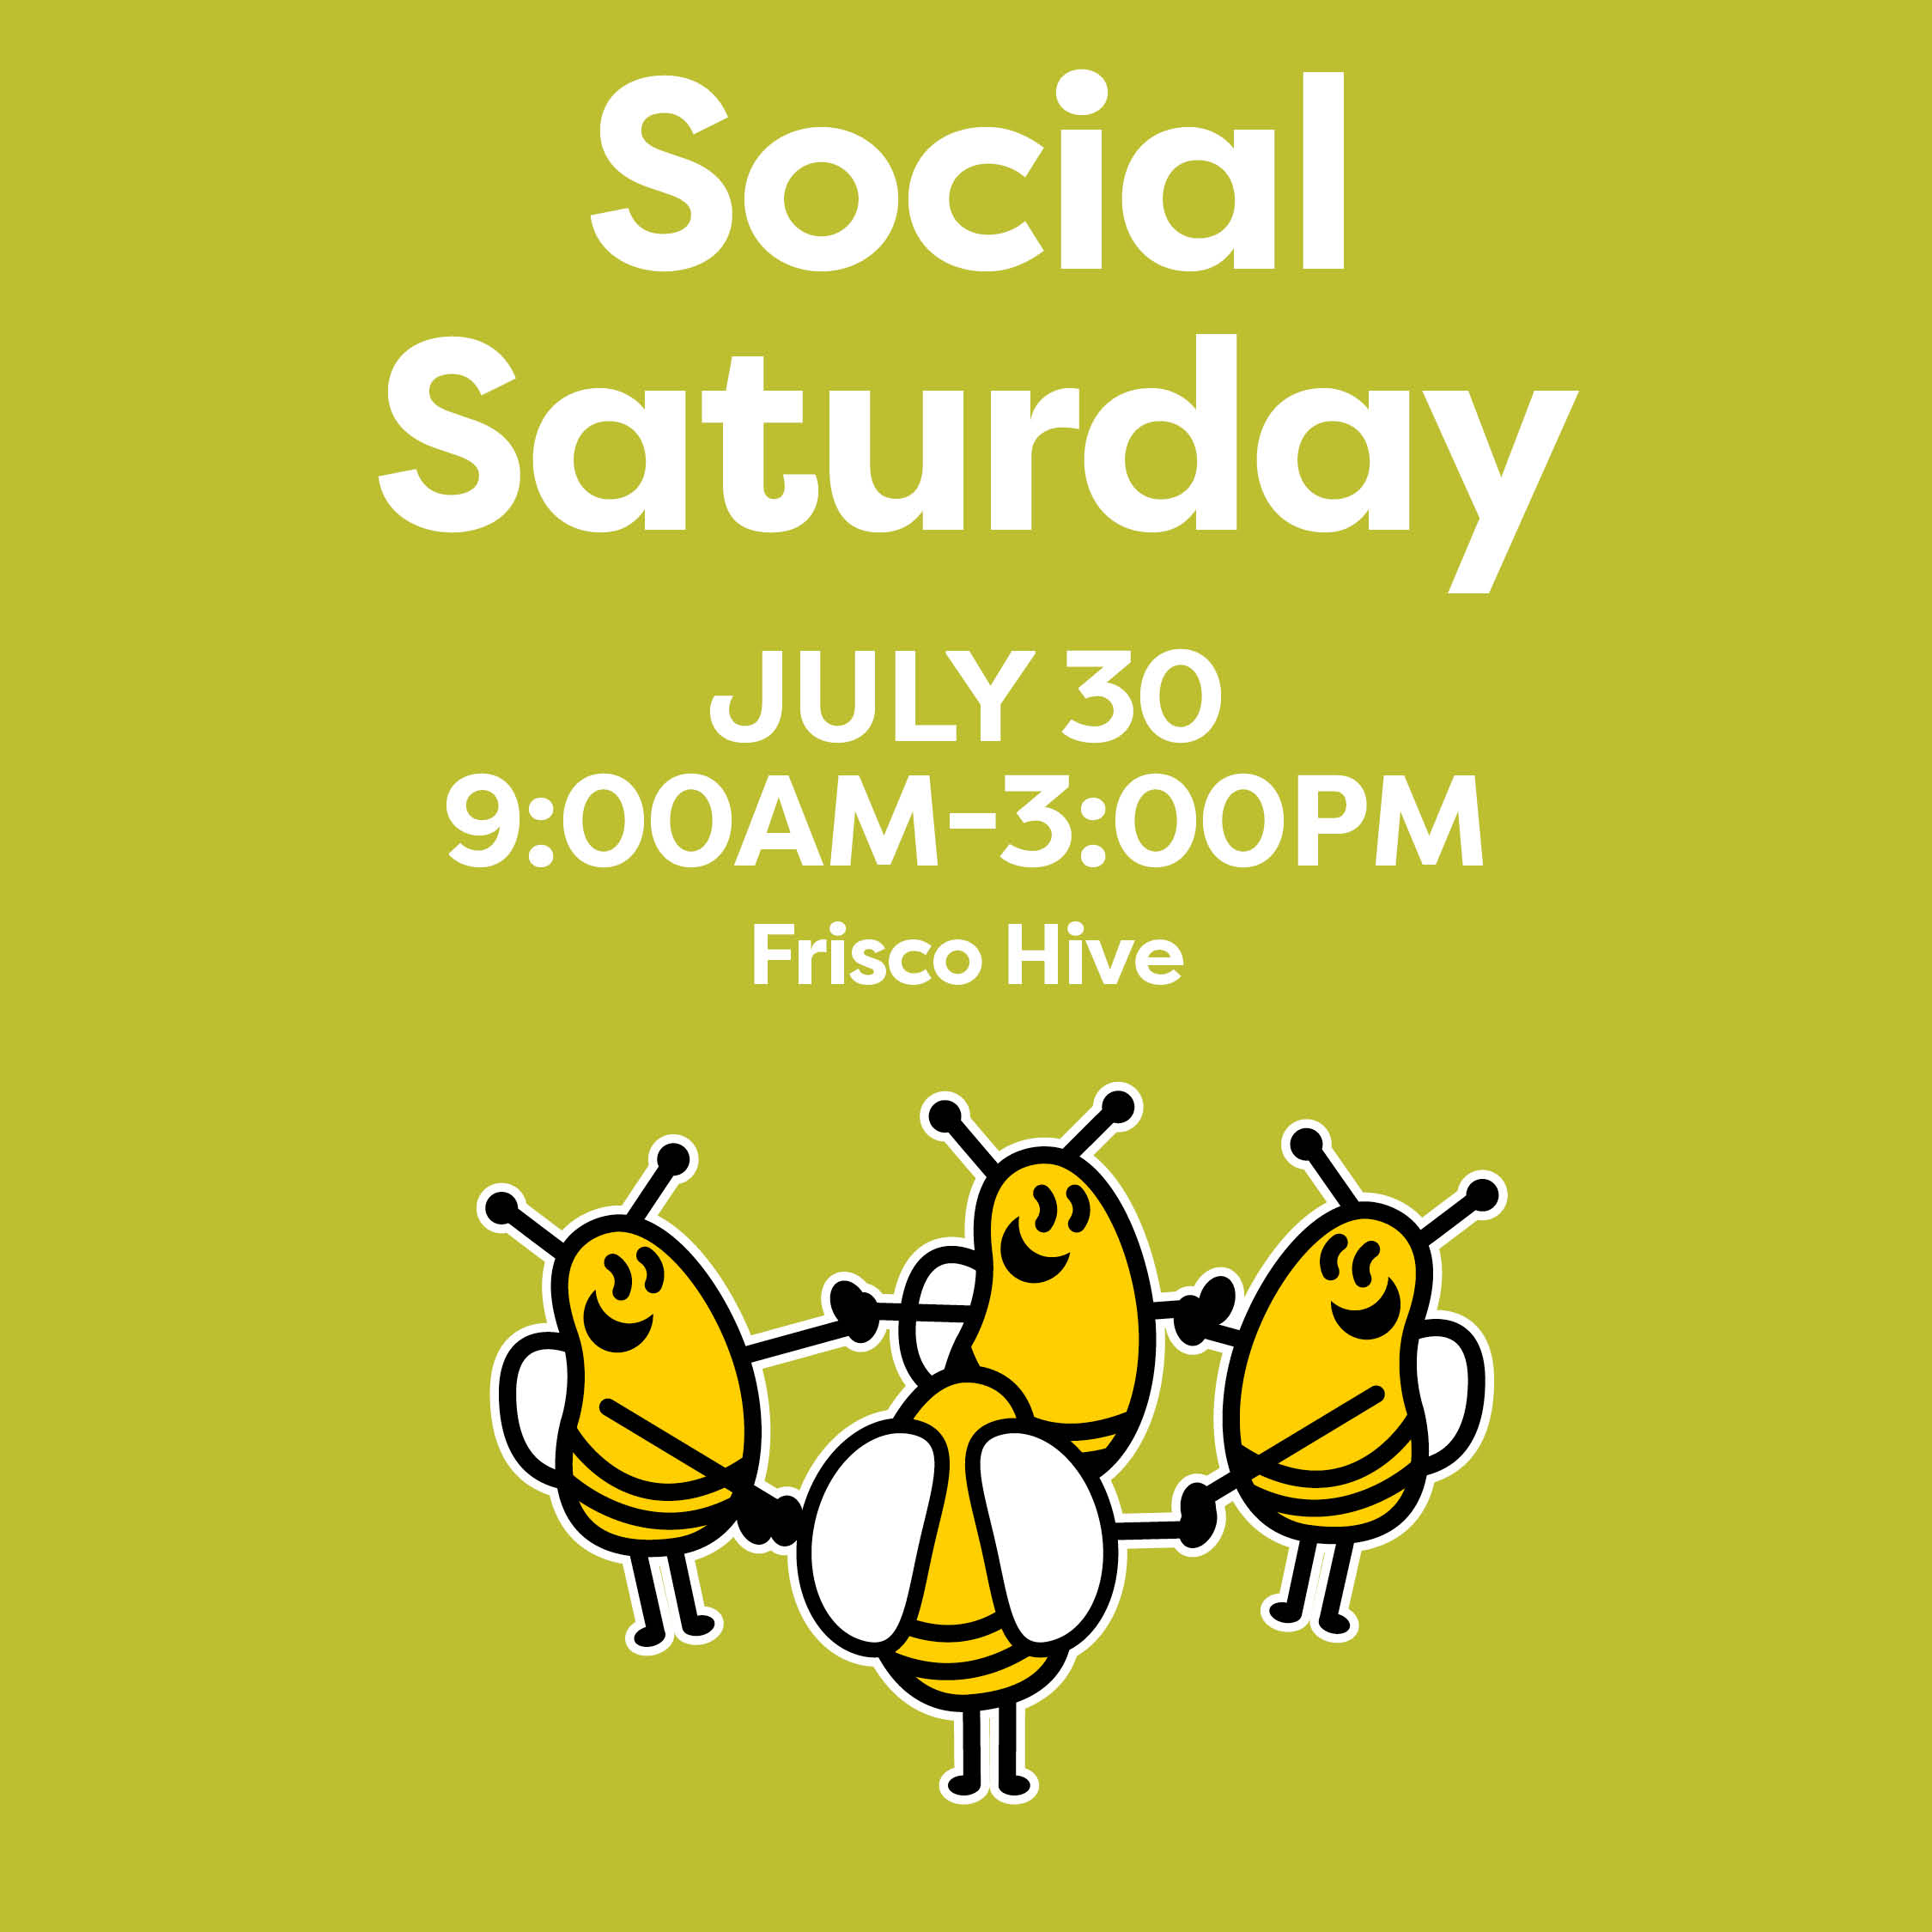 Social Saturday July 30